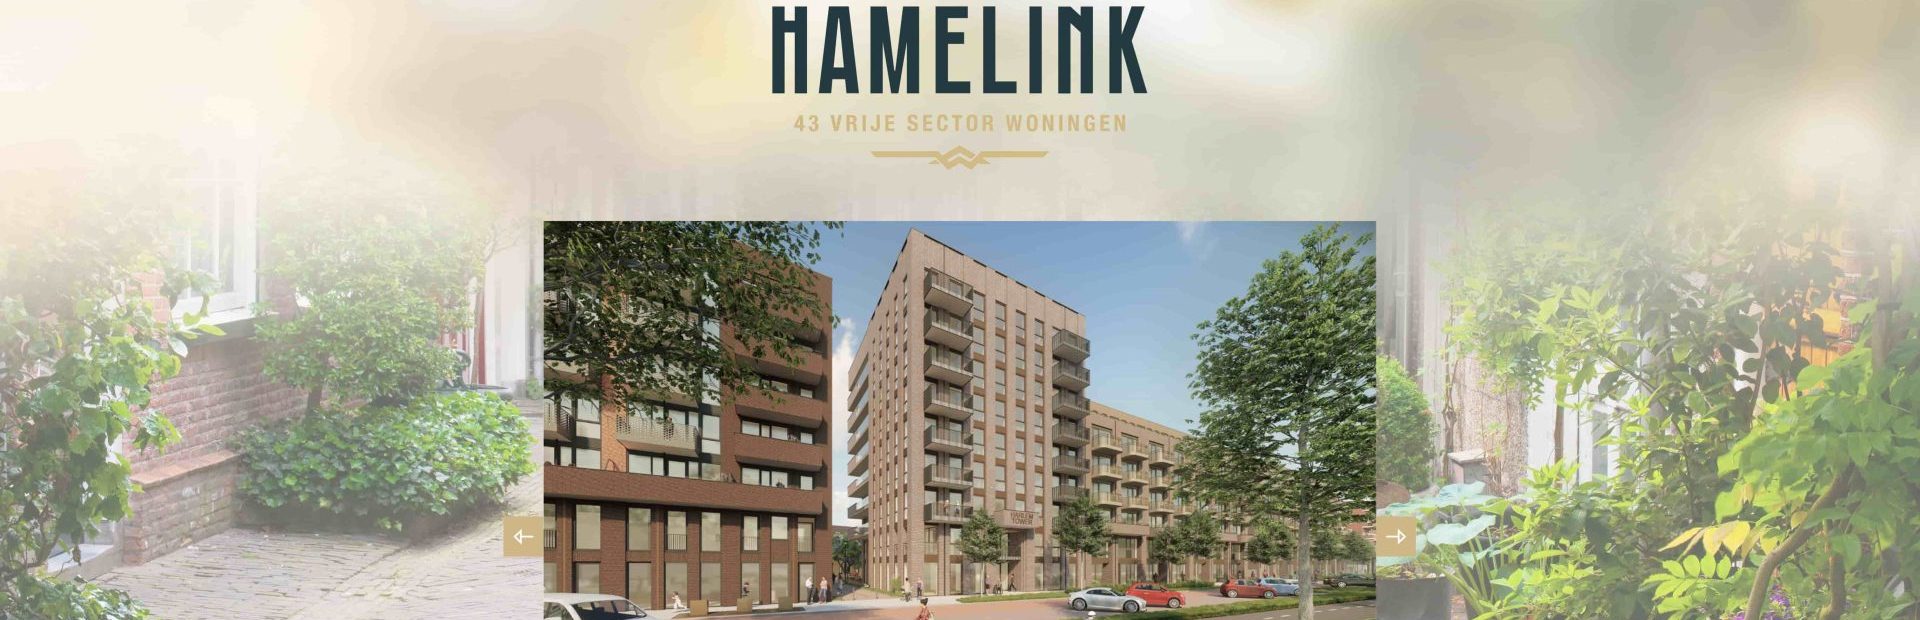 Vastgoedmarketing voor Hamelink; 43 huurwoningen in Haarlem